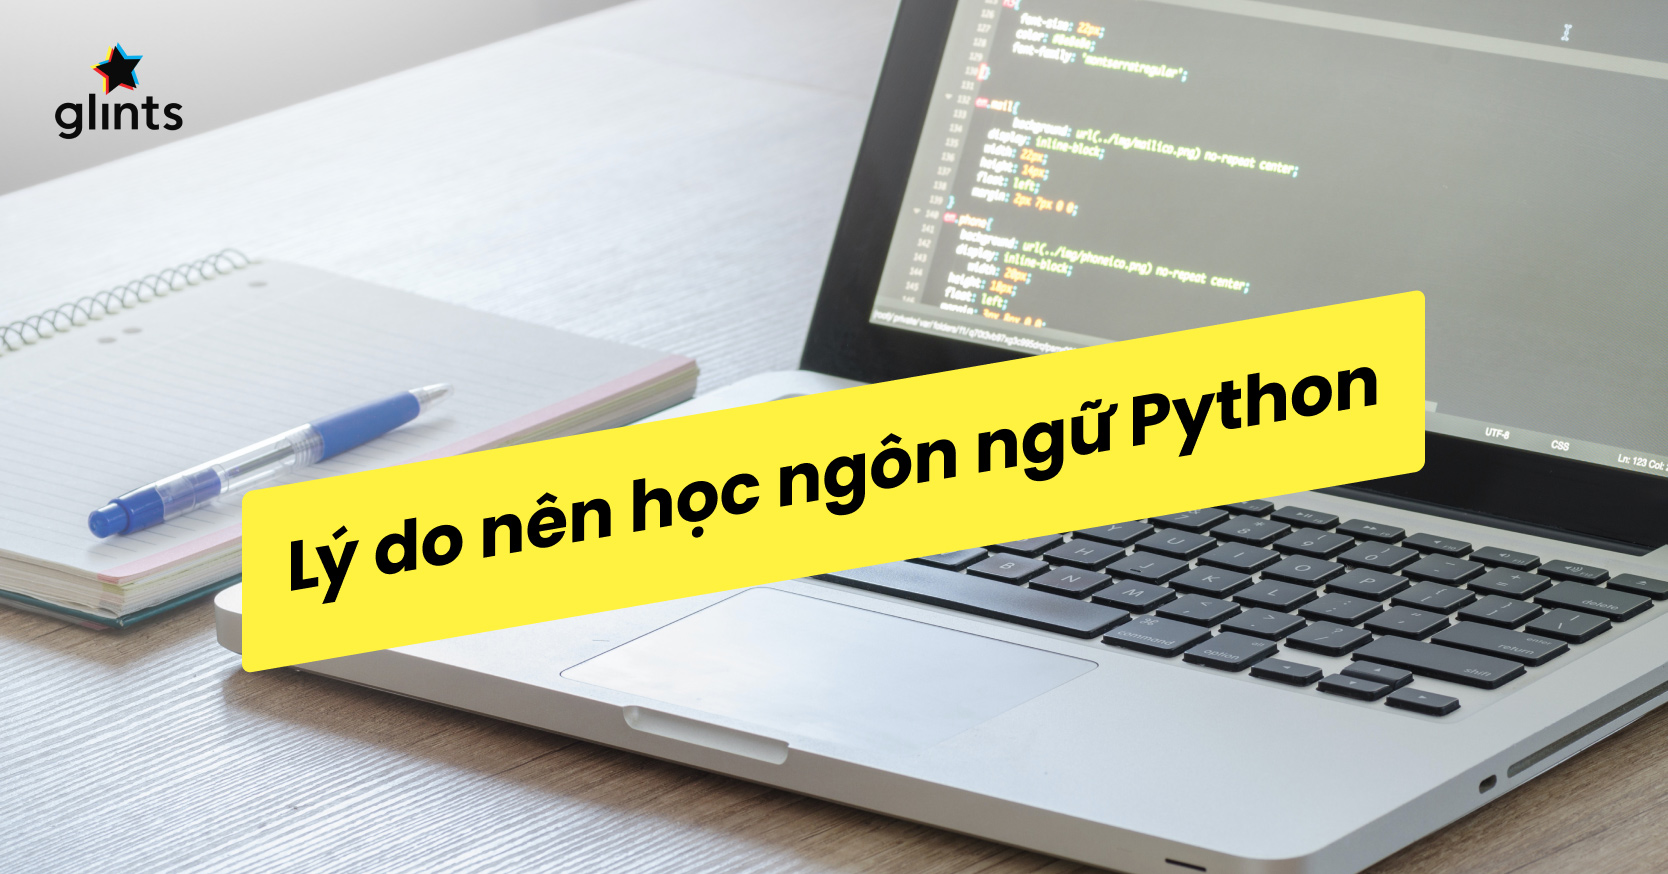 Thử thách bản thân với một trong những ngôn ngữ lập trình phổ biến nhất hiện nay - Python! Hãy xem hình ảnh liên quan đến Python programming language để khám phá tất cả những gì bạn có thể làm được.